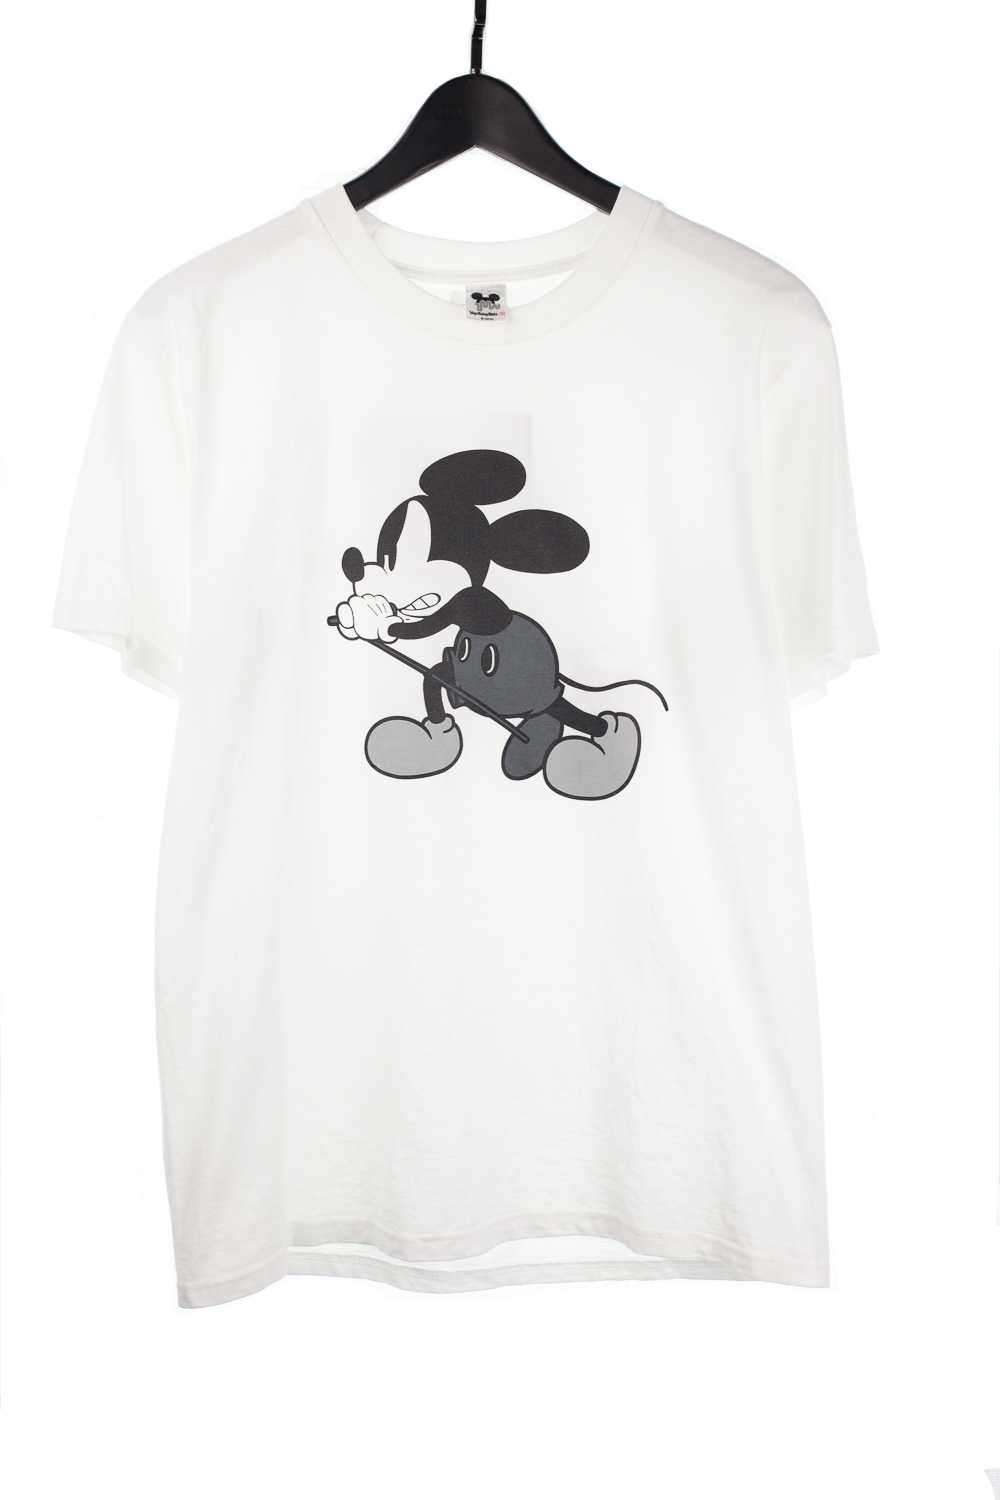 00 Cobain Mickey Shirt - Gem